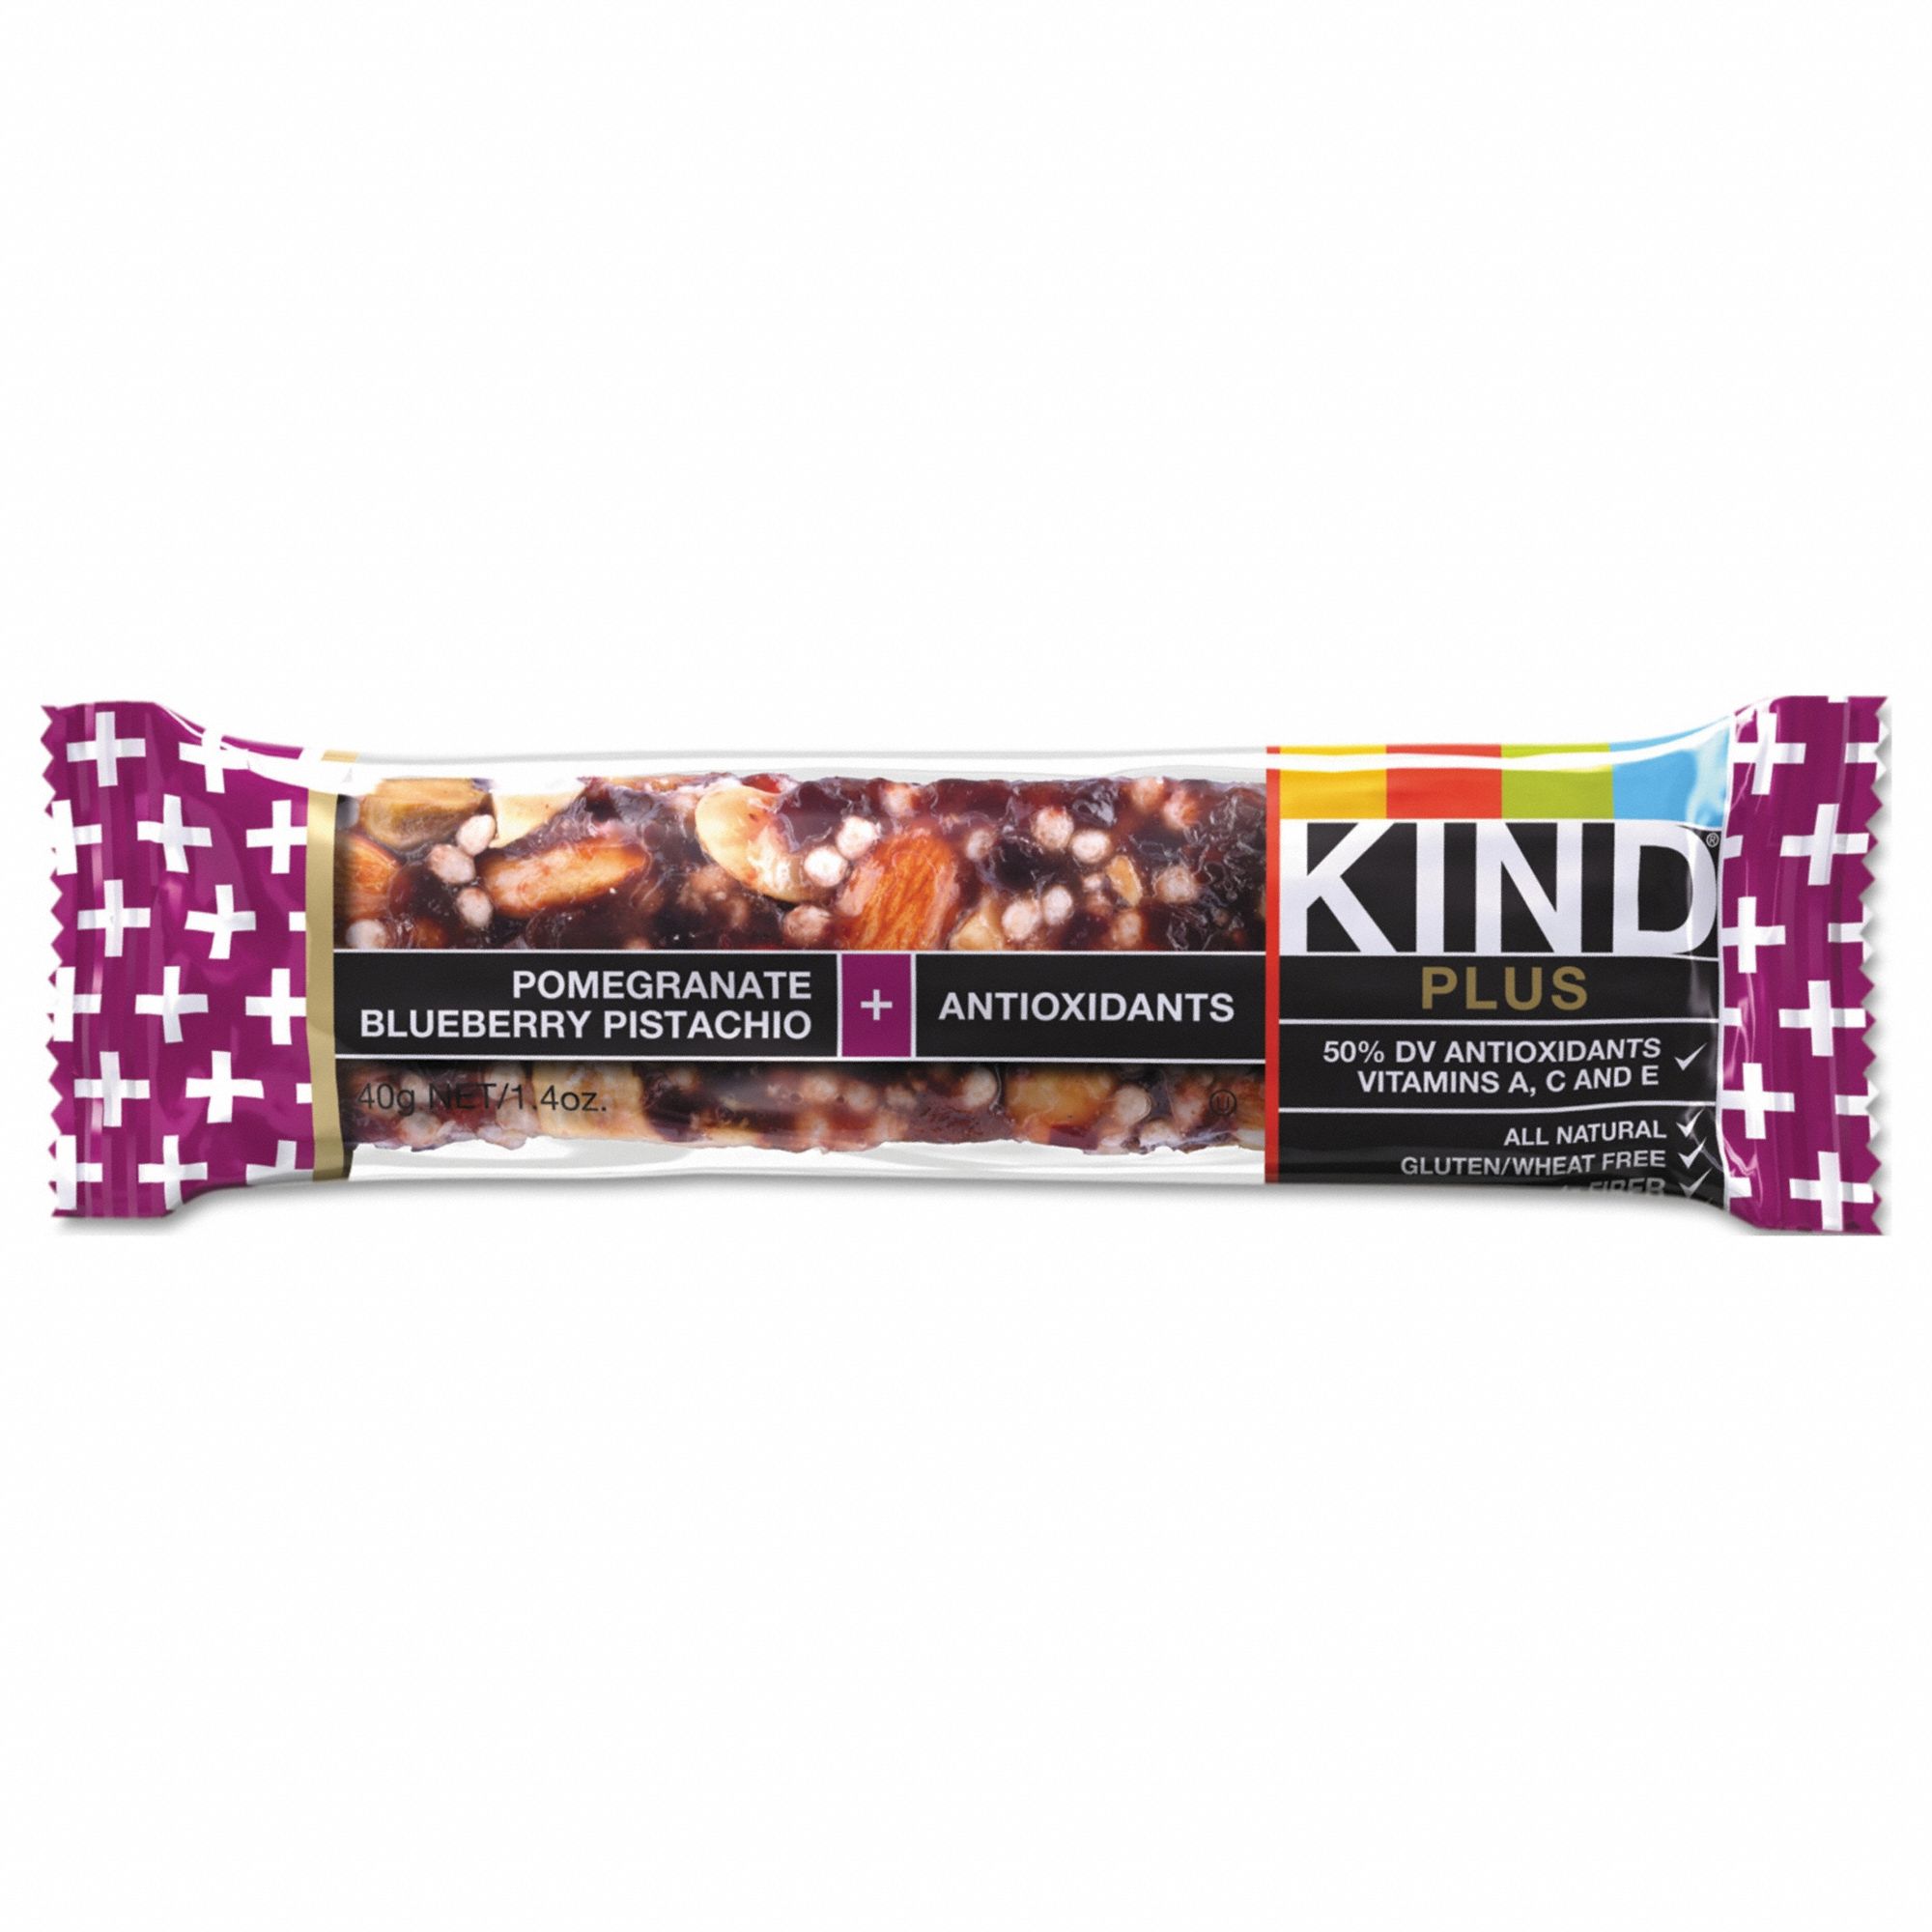 KIND Plus Nutrition Boost Bar: Pomegranate Blueberry Pistachio Plus Antioxidants, 12 PK